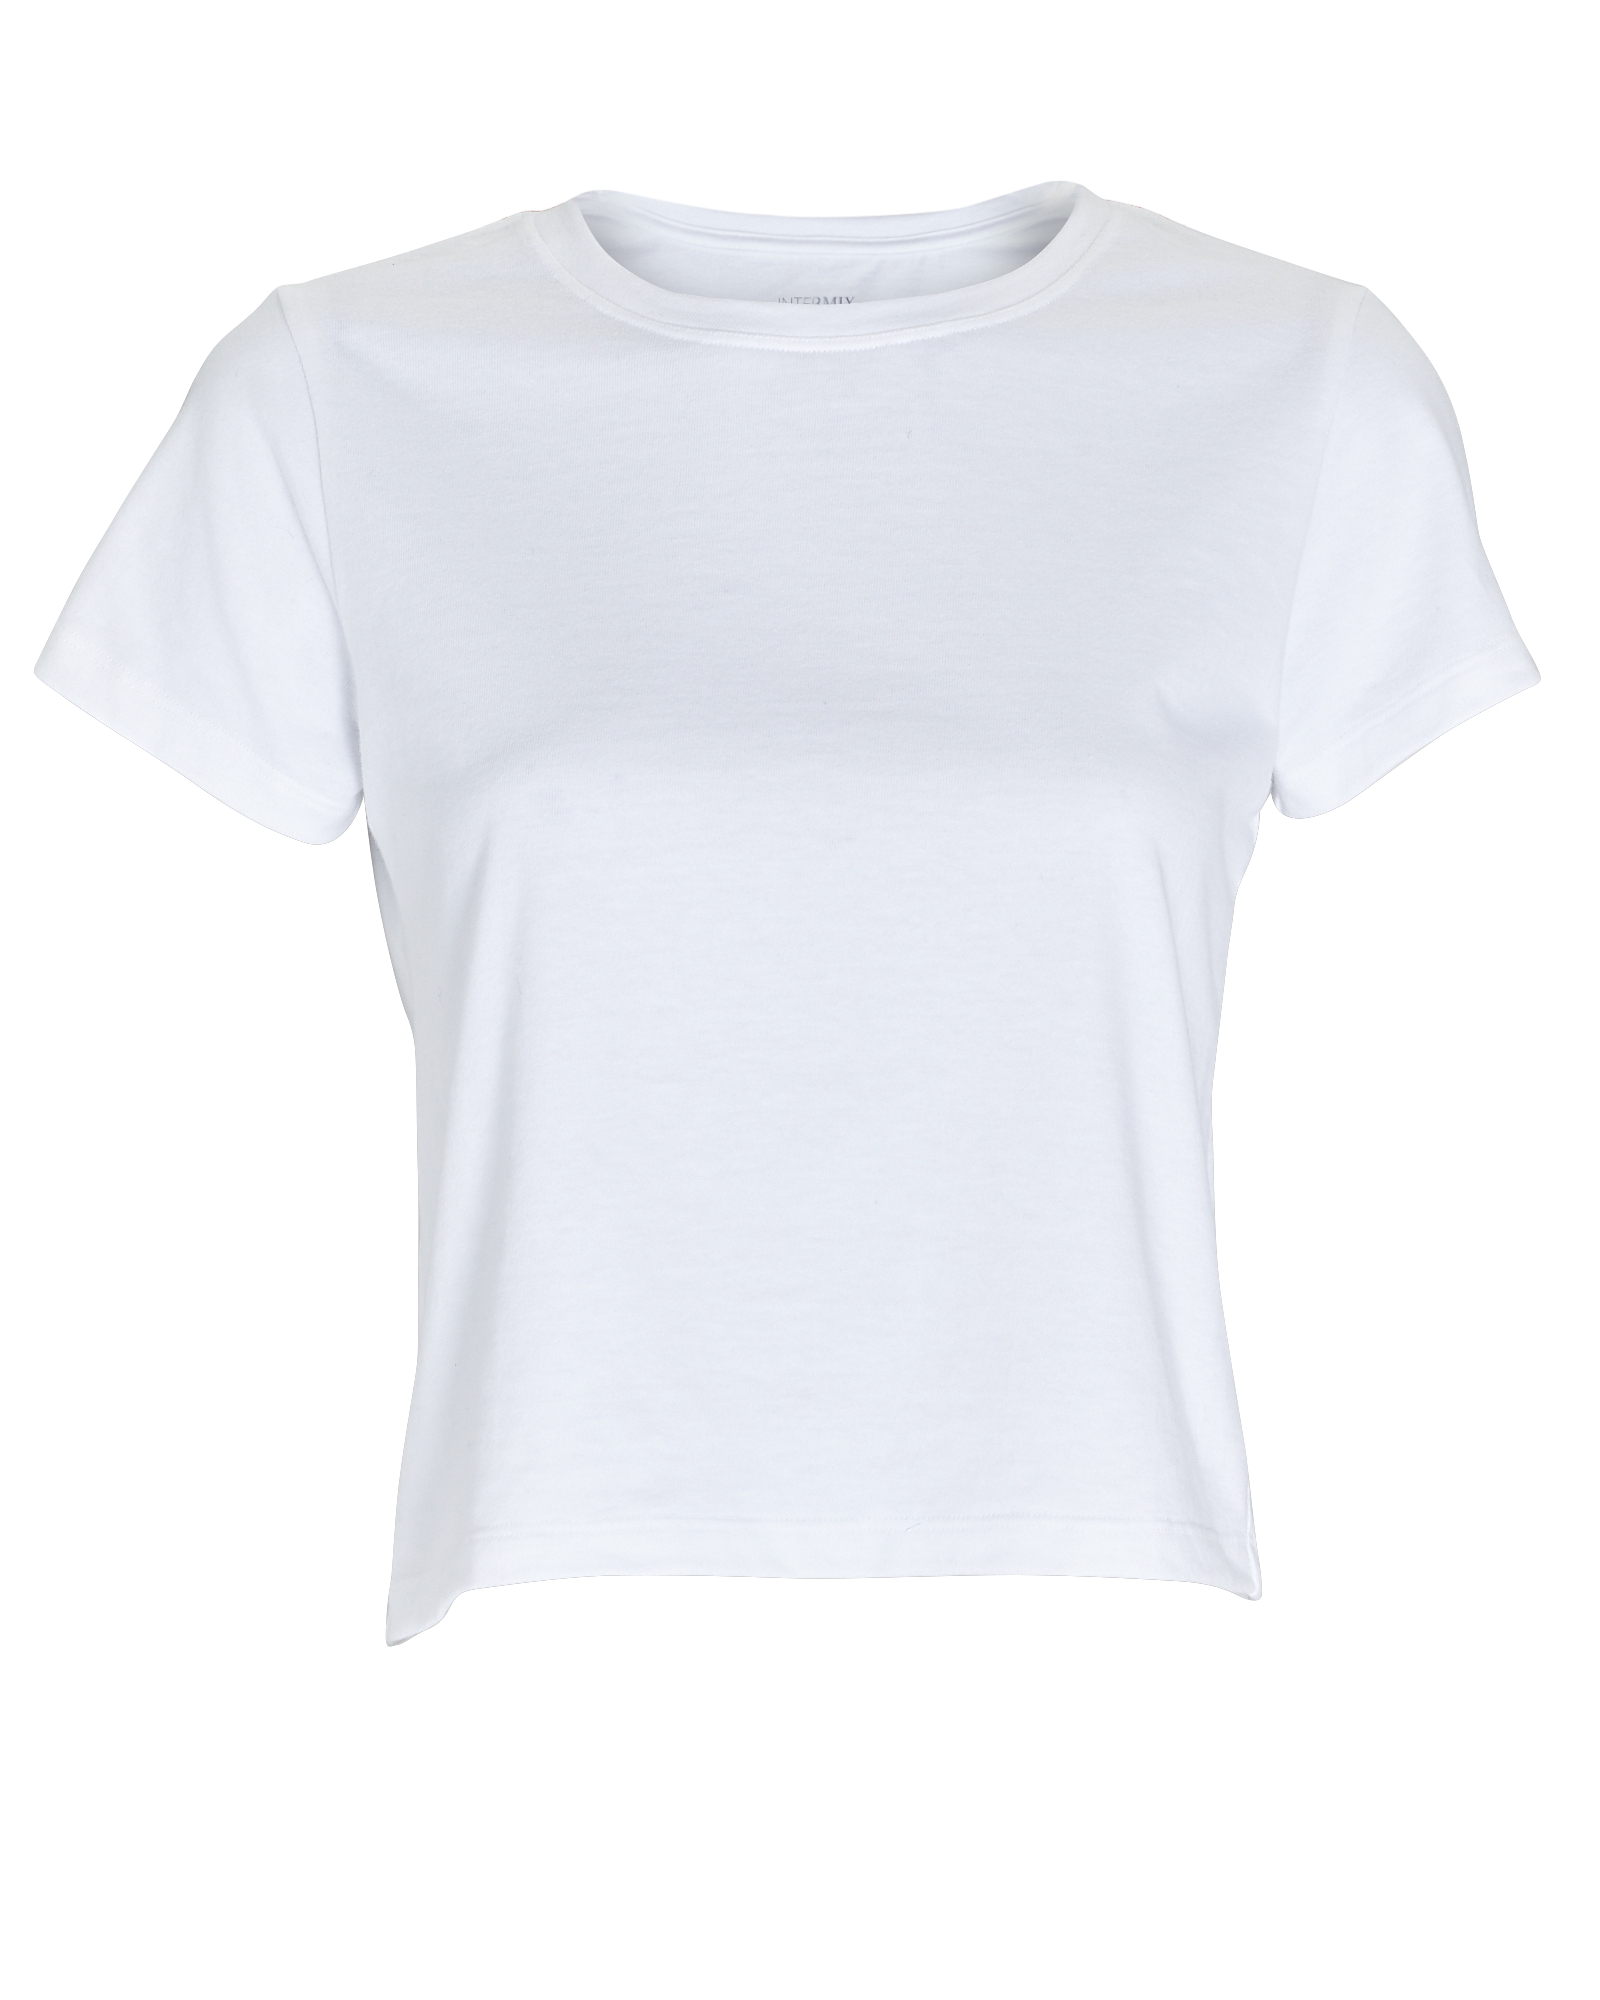 INTERMIX Private Label Classic Cotton T-Shirt | INTERMIX®